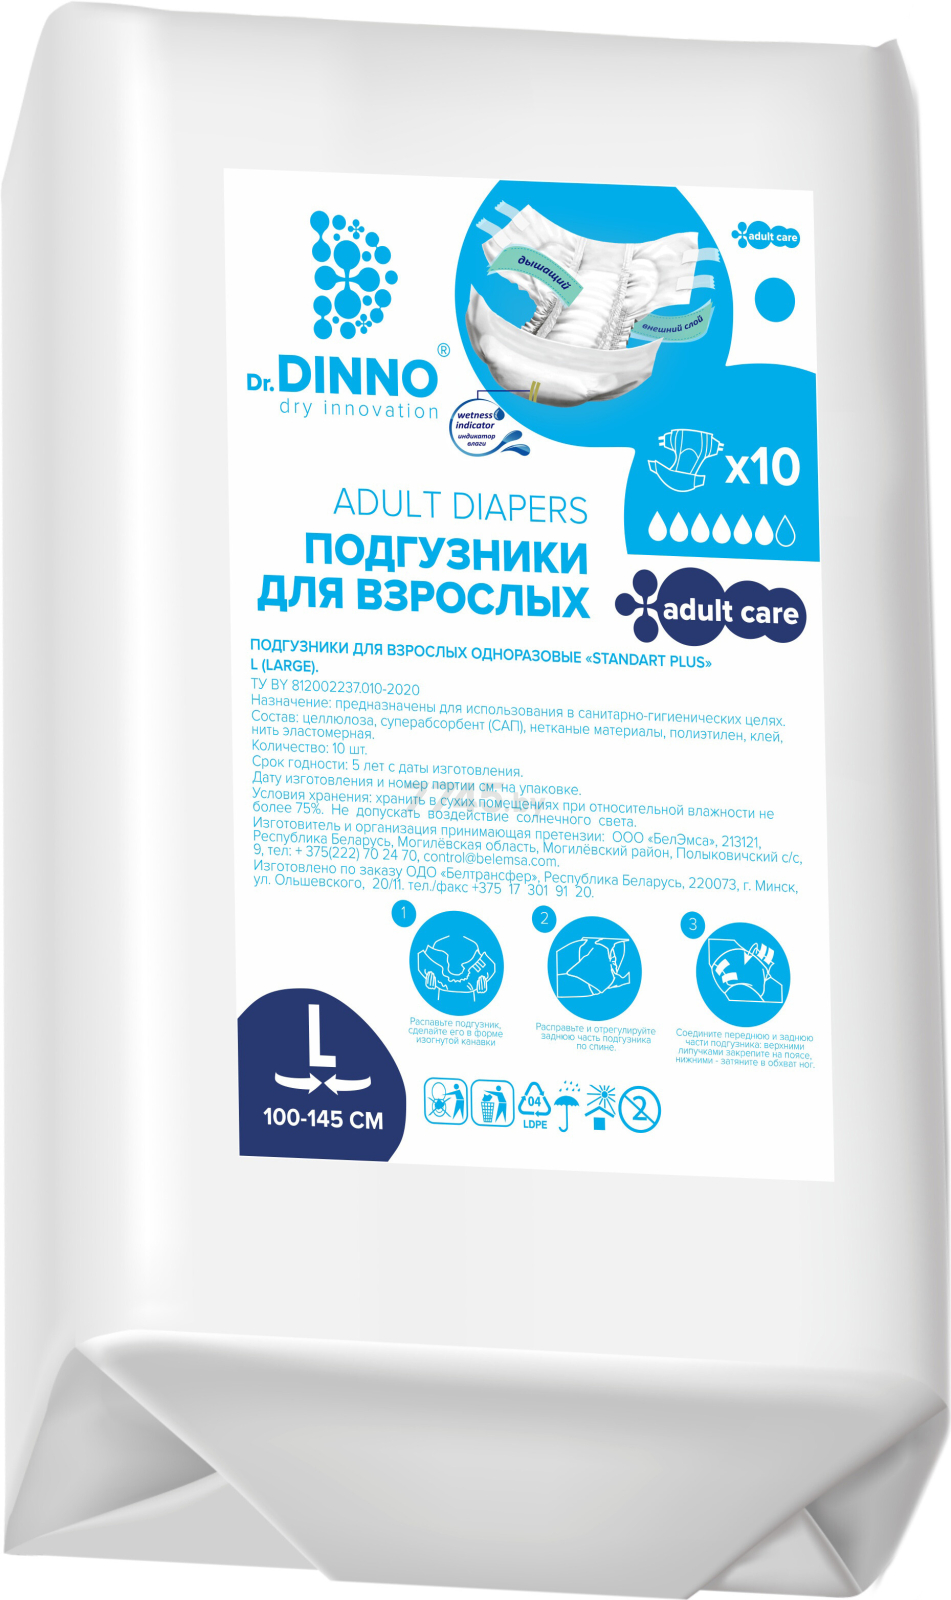 Подгузники для взрослых DR. DINNO Standart Plus Large 100-145 см 10 штук (4810703154339)